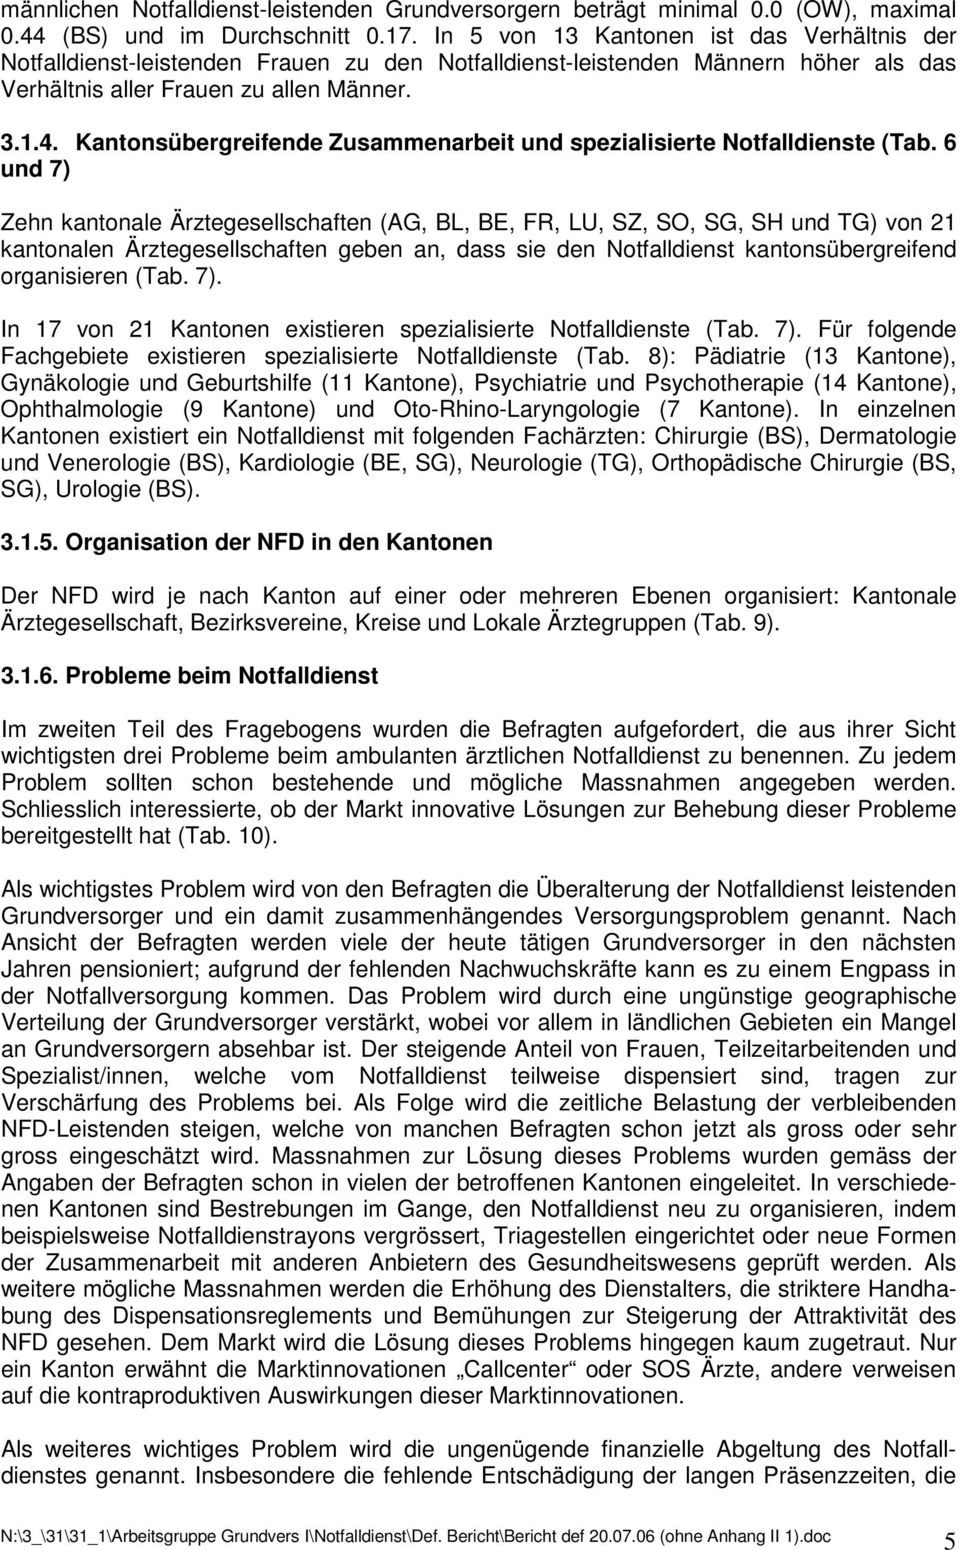 Kantonsübergreifende Zusammenarbeit und spezialisierte Notfalldienste (Tab.